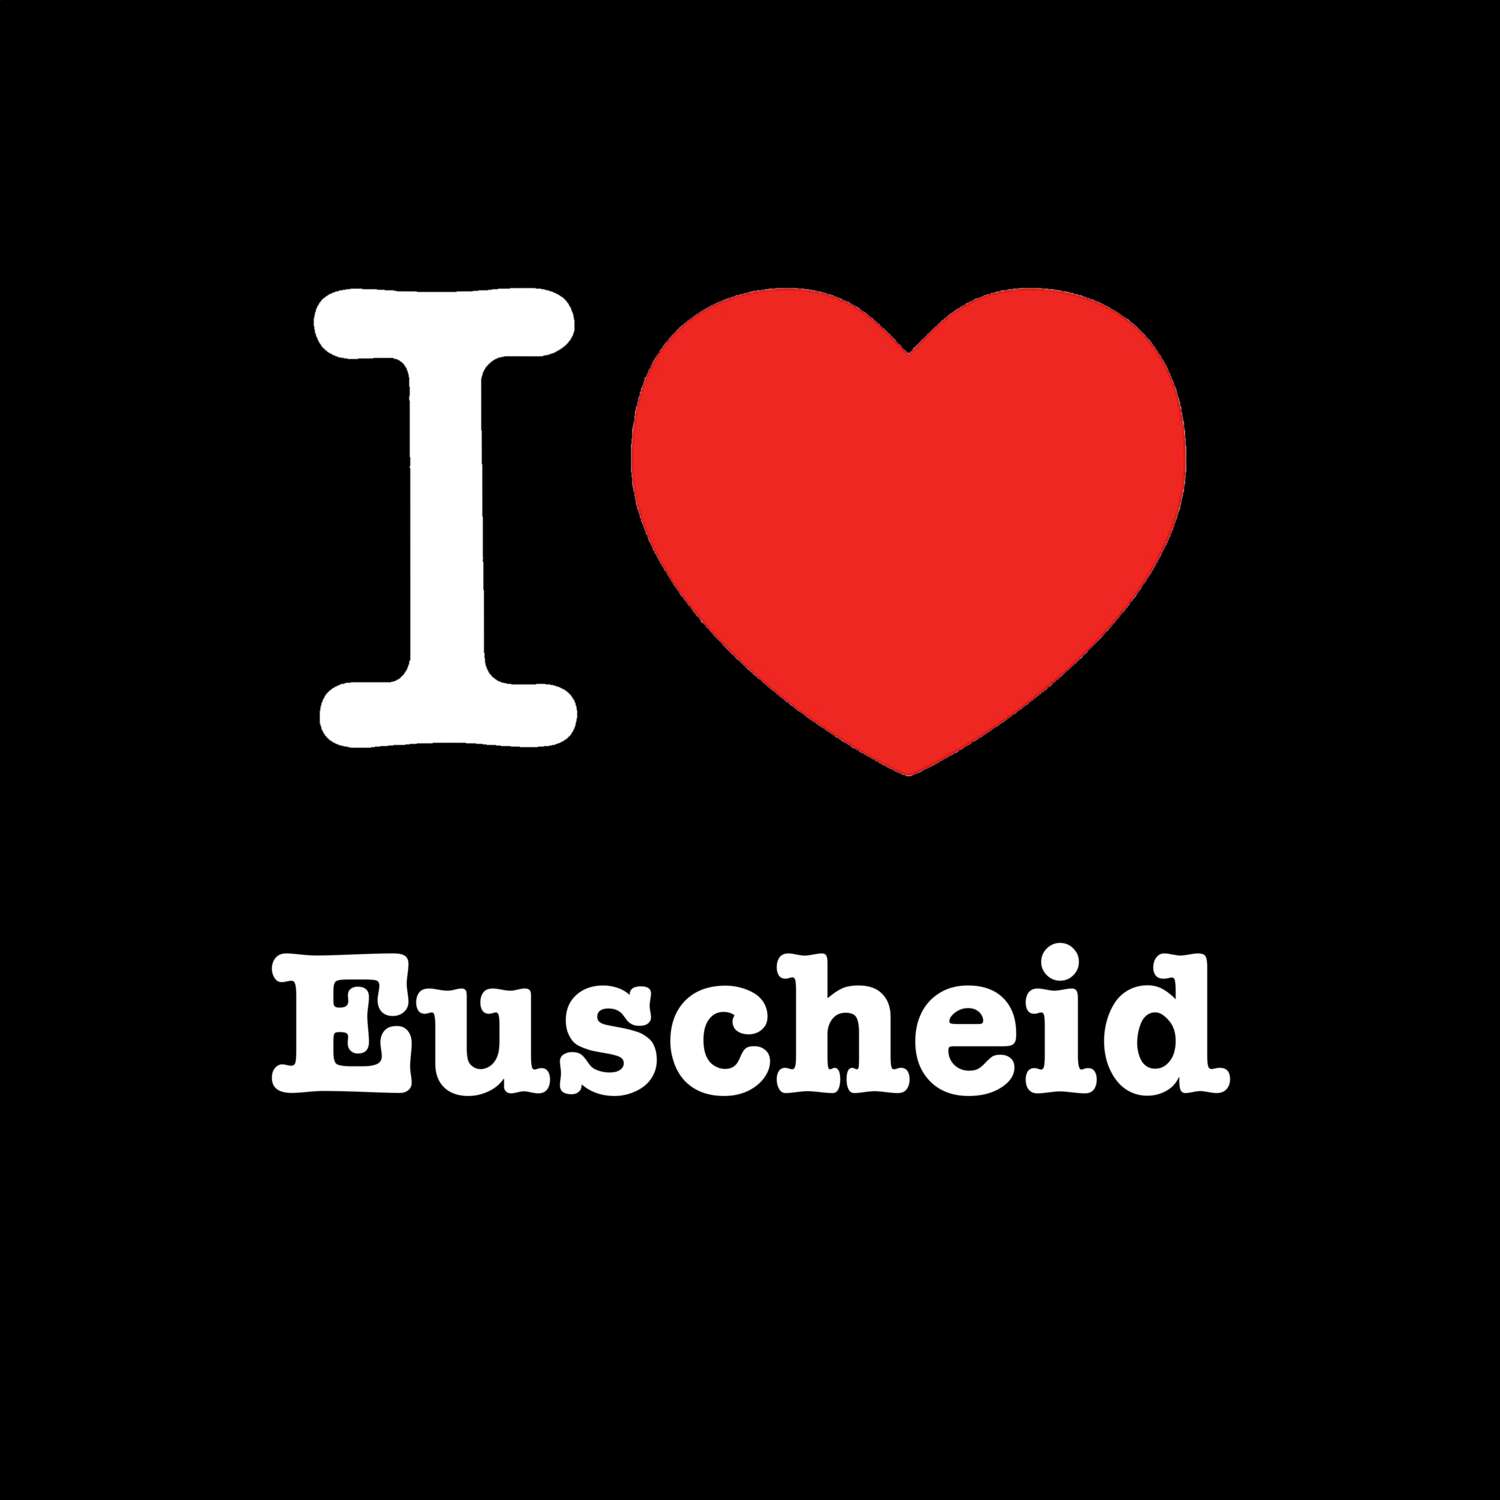 Euscheid T-Shirt »I love«